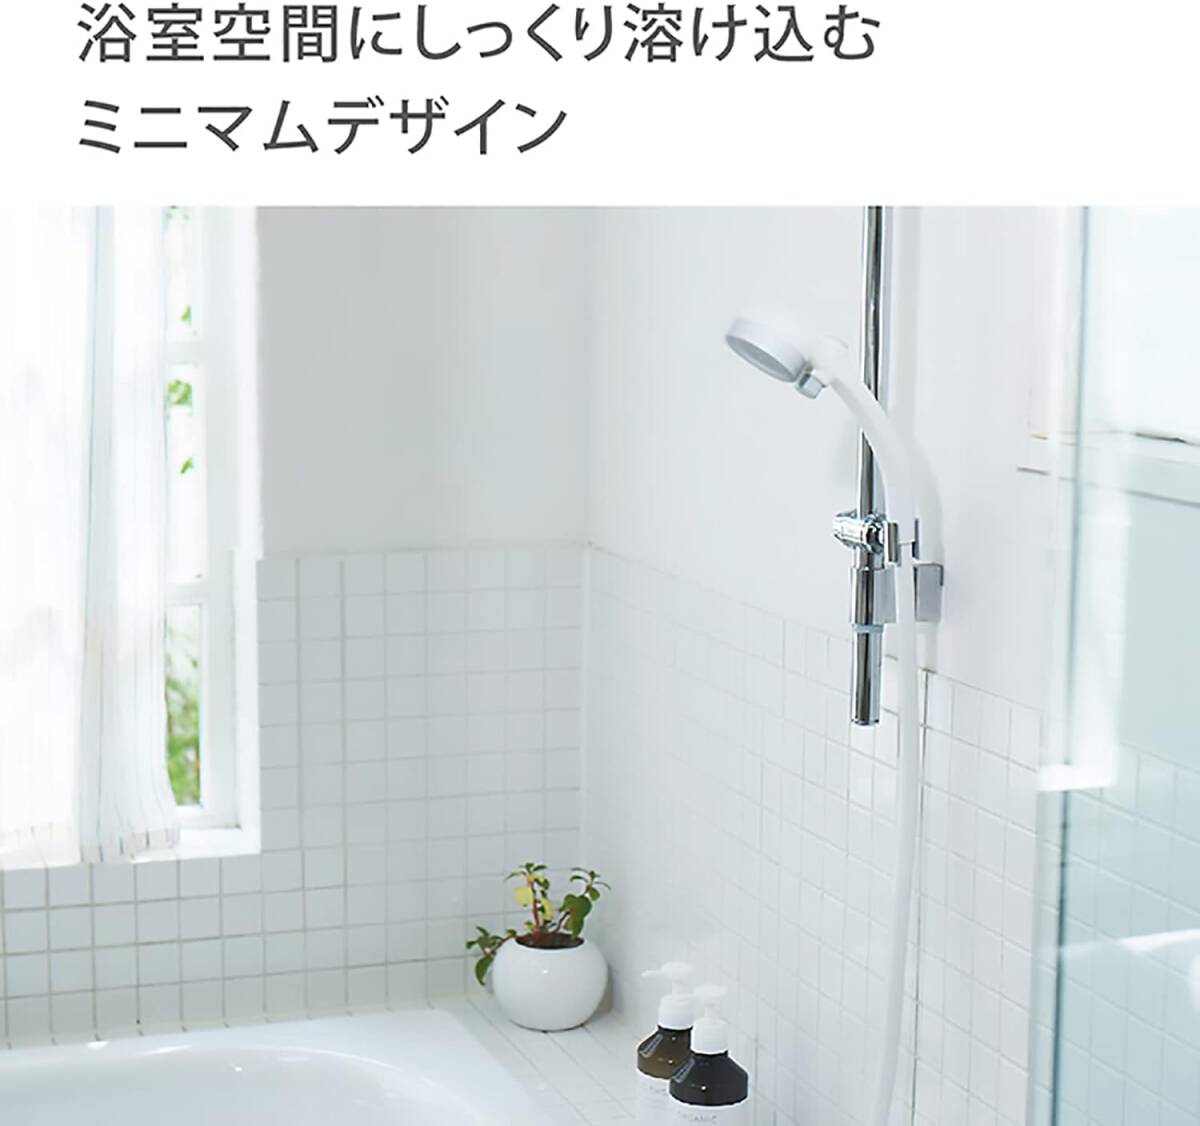 タカギ(takagi) シャワーヘッド シャワー キモチイイシャワピタT 節水 低水圧 工具不要 JSB012_画像2